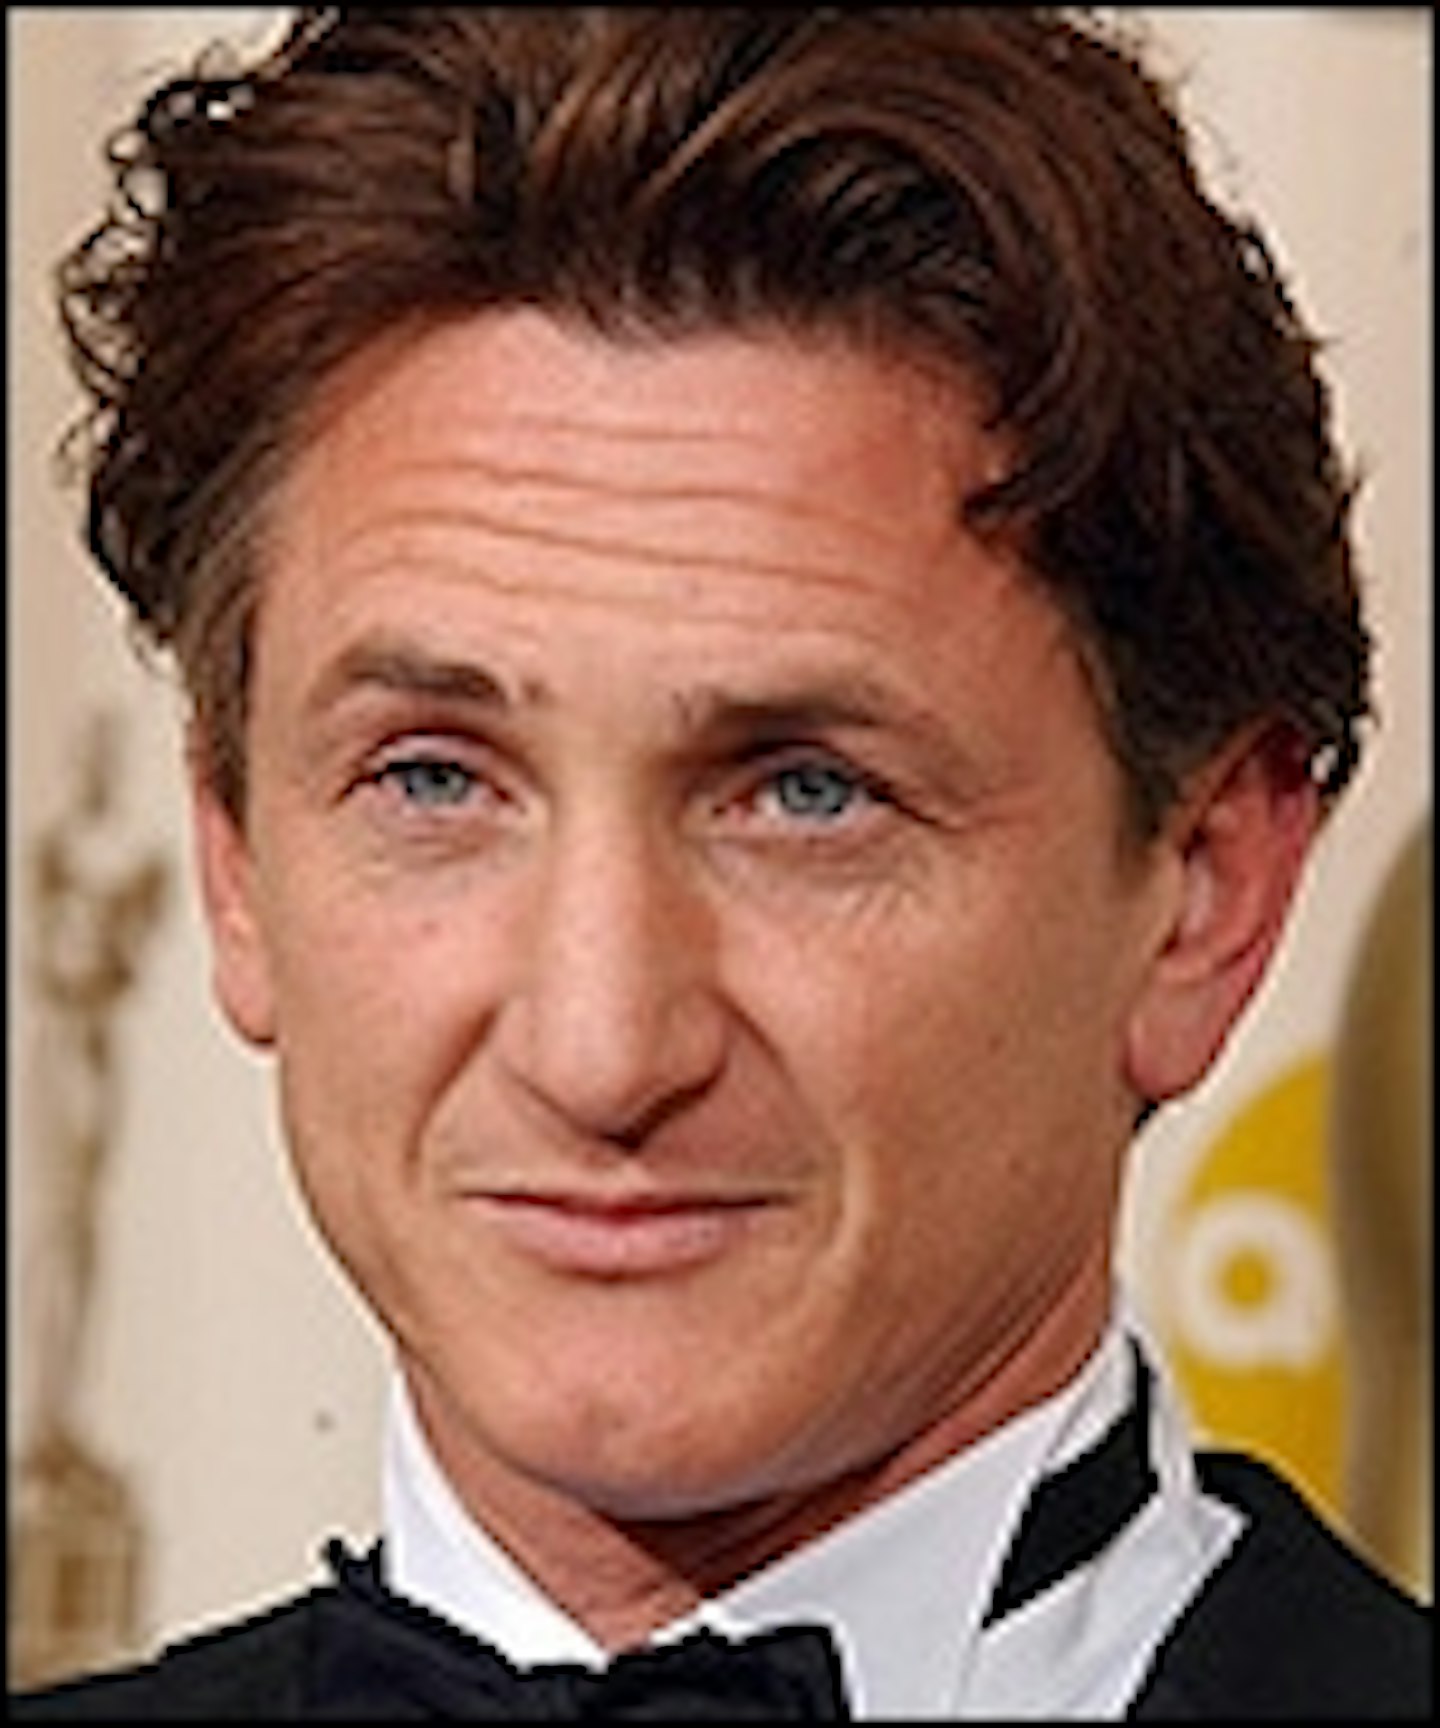 Sean Penn Is No Longer A Stooge